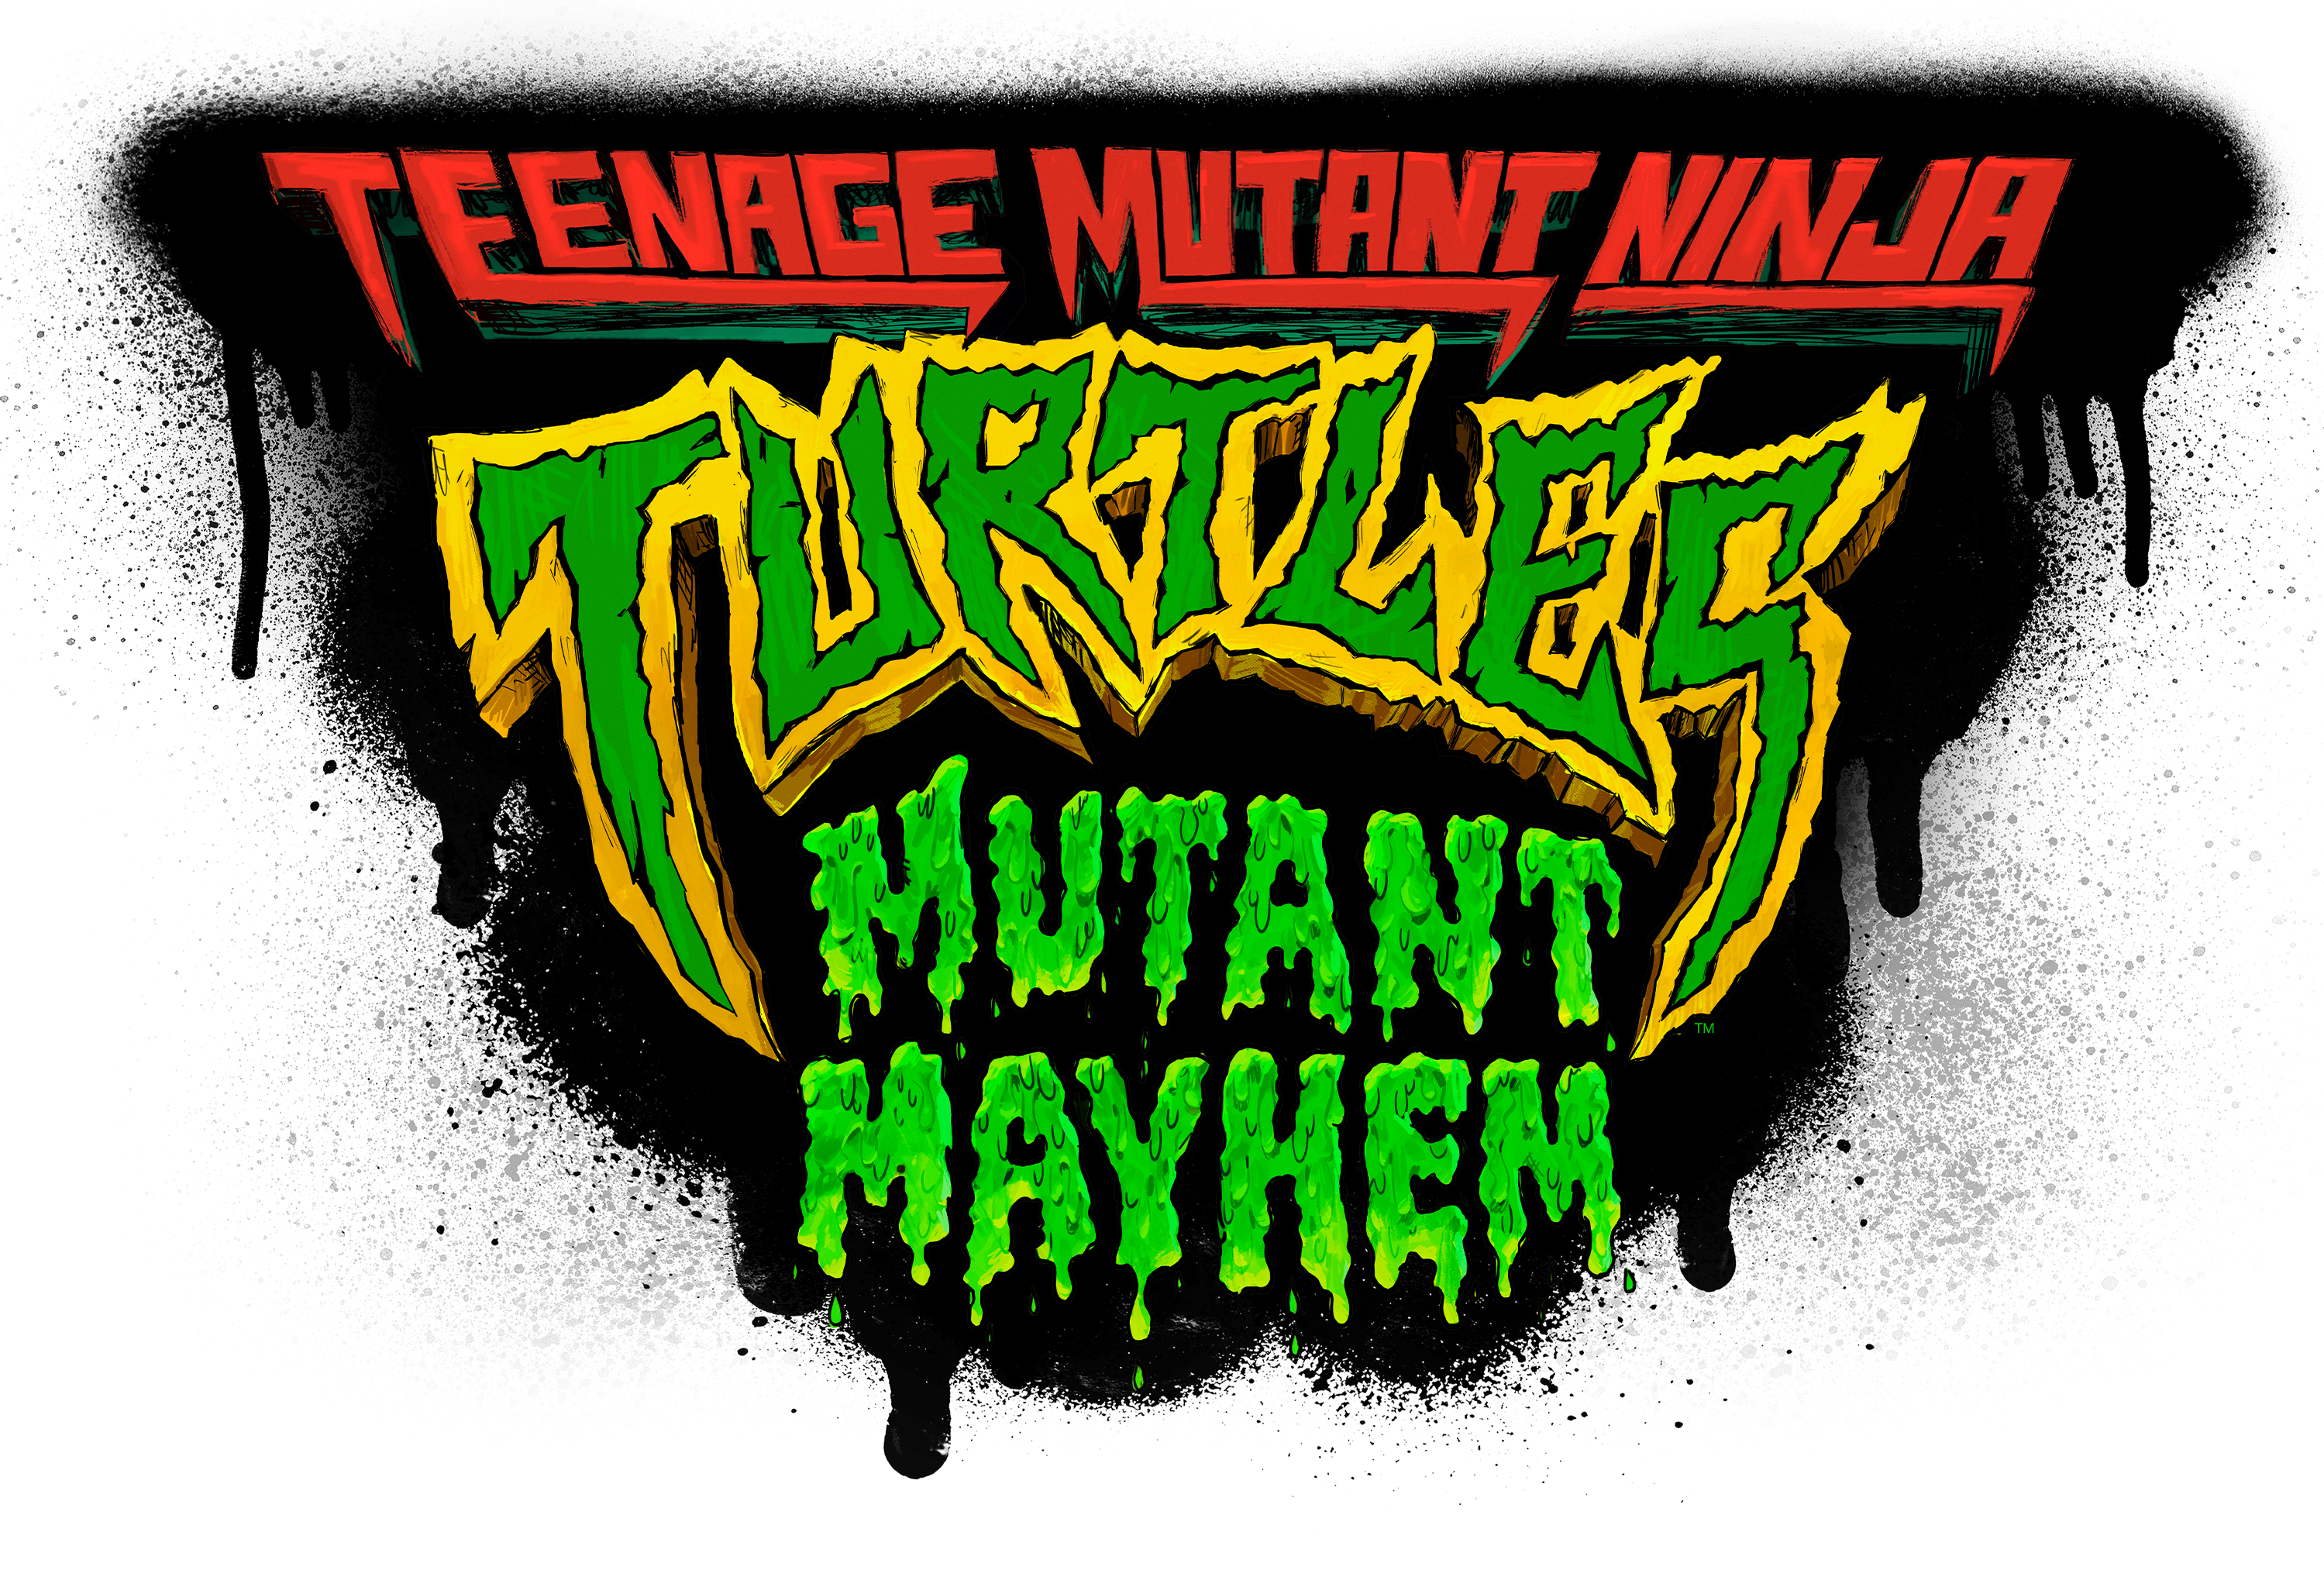 Teenage Mutant Ninja Turtles: Mutant Mayhem Costume Turtle Basic Figure 4- Pack by Playmates Toys 